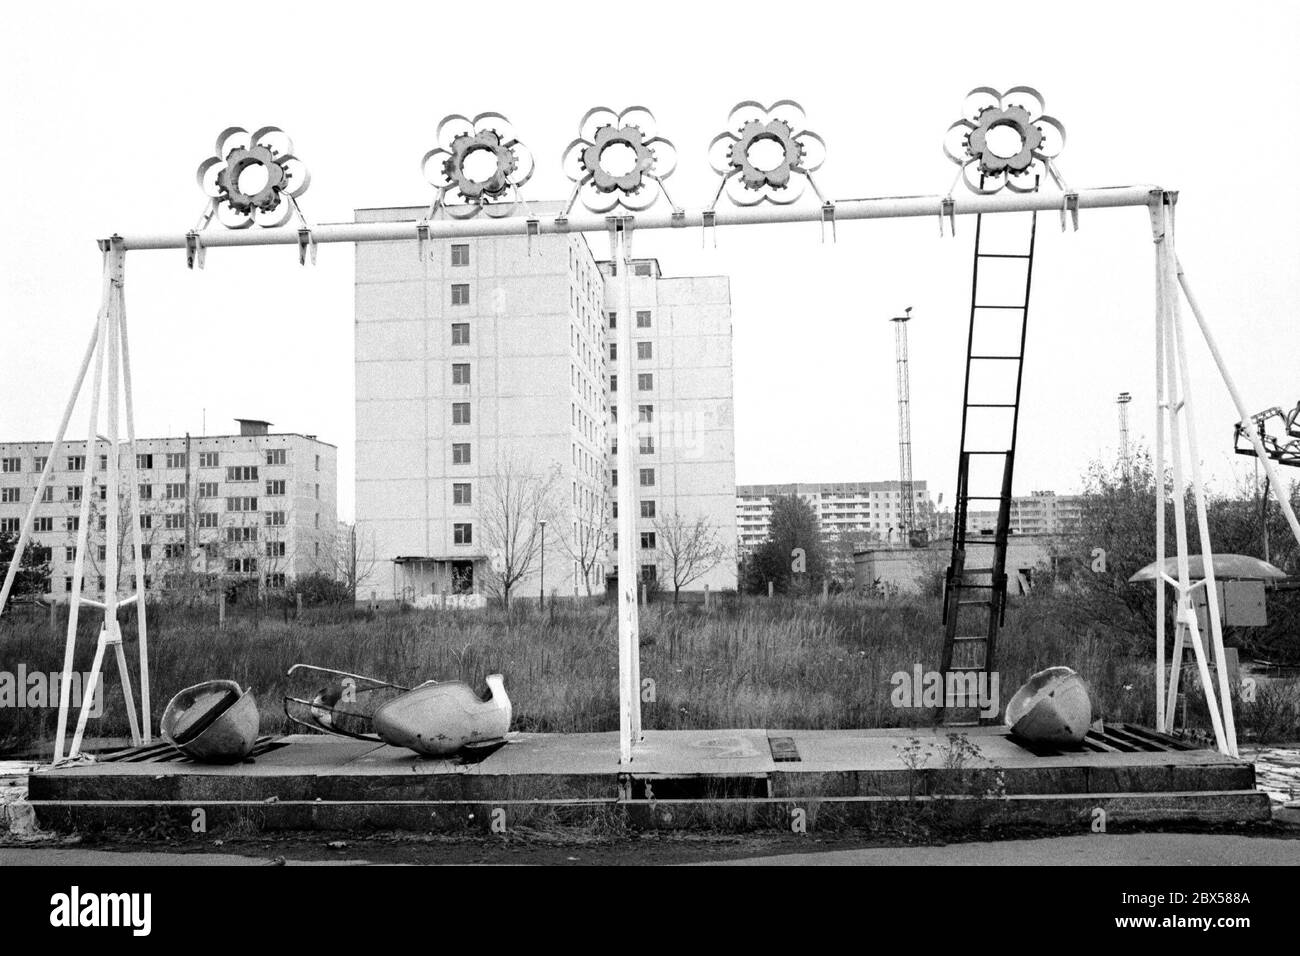 Verfallene Schiffsschaukel auf der Messe in der Stadt Pripyat, der nächsten Stadt zum Kernkraftwerk Tschernobyl. Erst 36 Stunden nach dem Reaktorunfall wurde die Stadt evakuiert, so dass die Bewohner glaubten, bald nach Hause zurückkehren zu können. Heute liegt die Geisterstadt mitten in der 30 km langen unbewohnbaren Zone um den Reaktor. Stockfoto